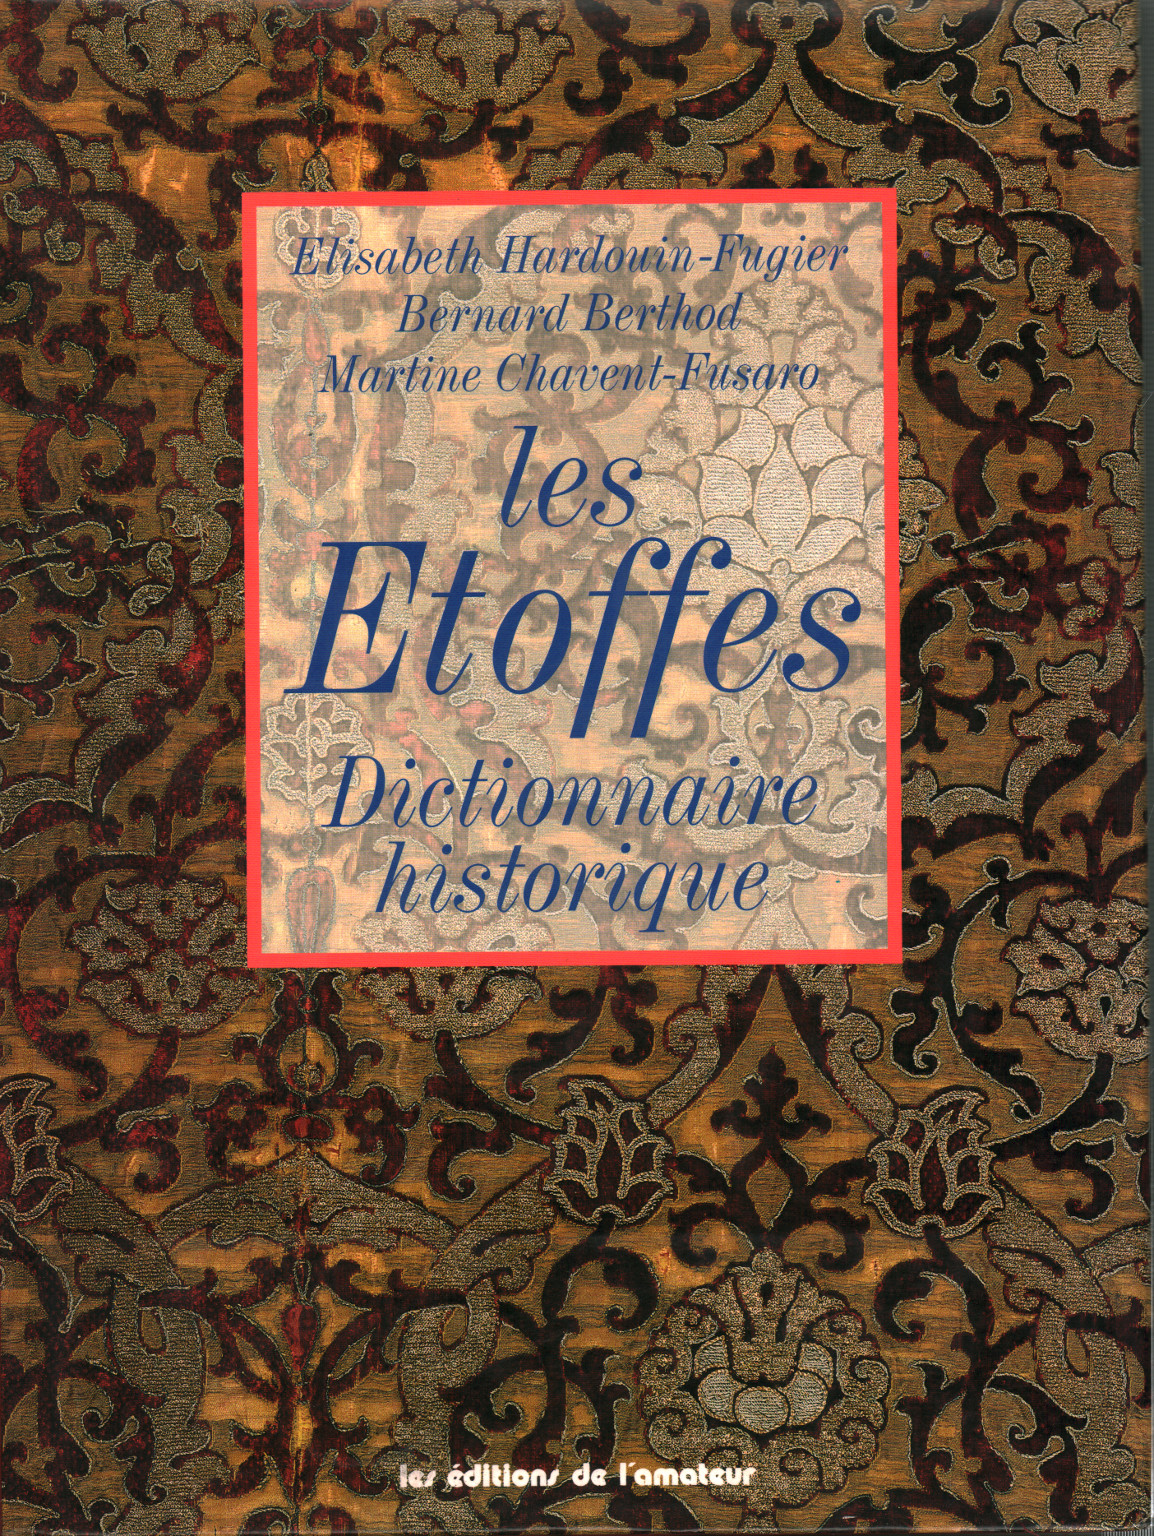 Les Etoffes. Dictionnaire historique, s.una.